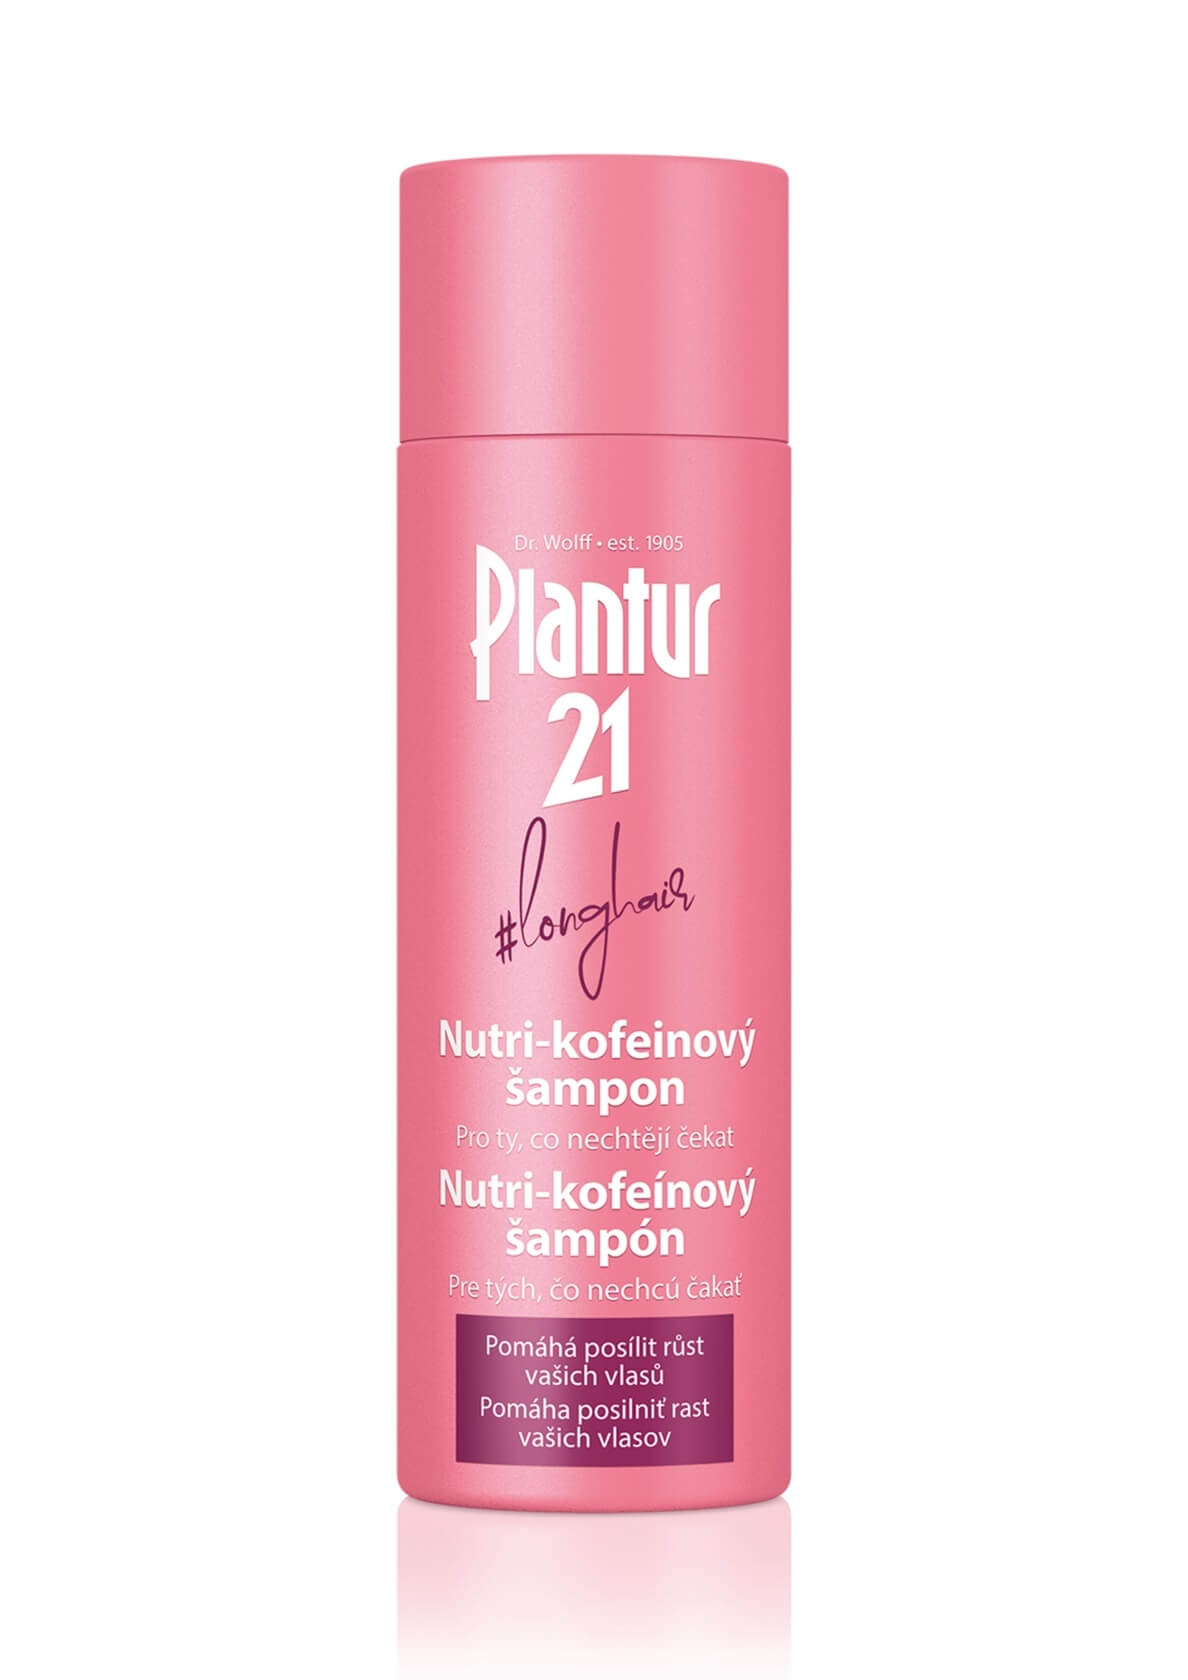 Zobrazit detail výrobku Plantur Nutri-kofeinový šampon Longhair pro podporu růstu vlasů 200 ml